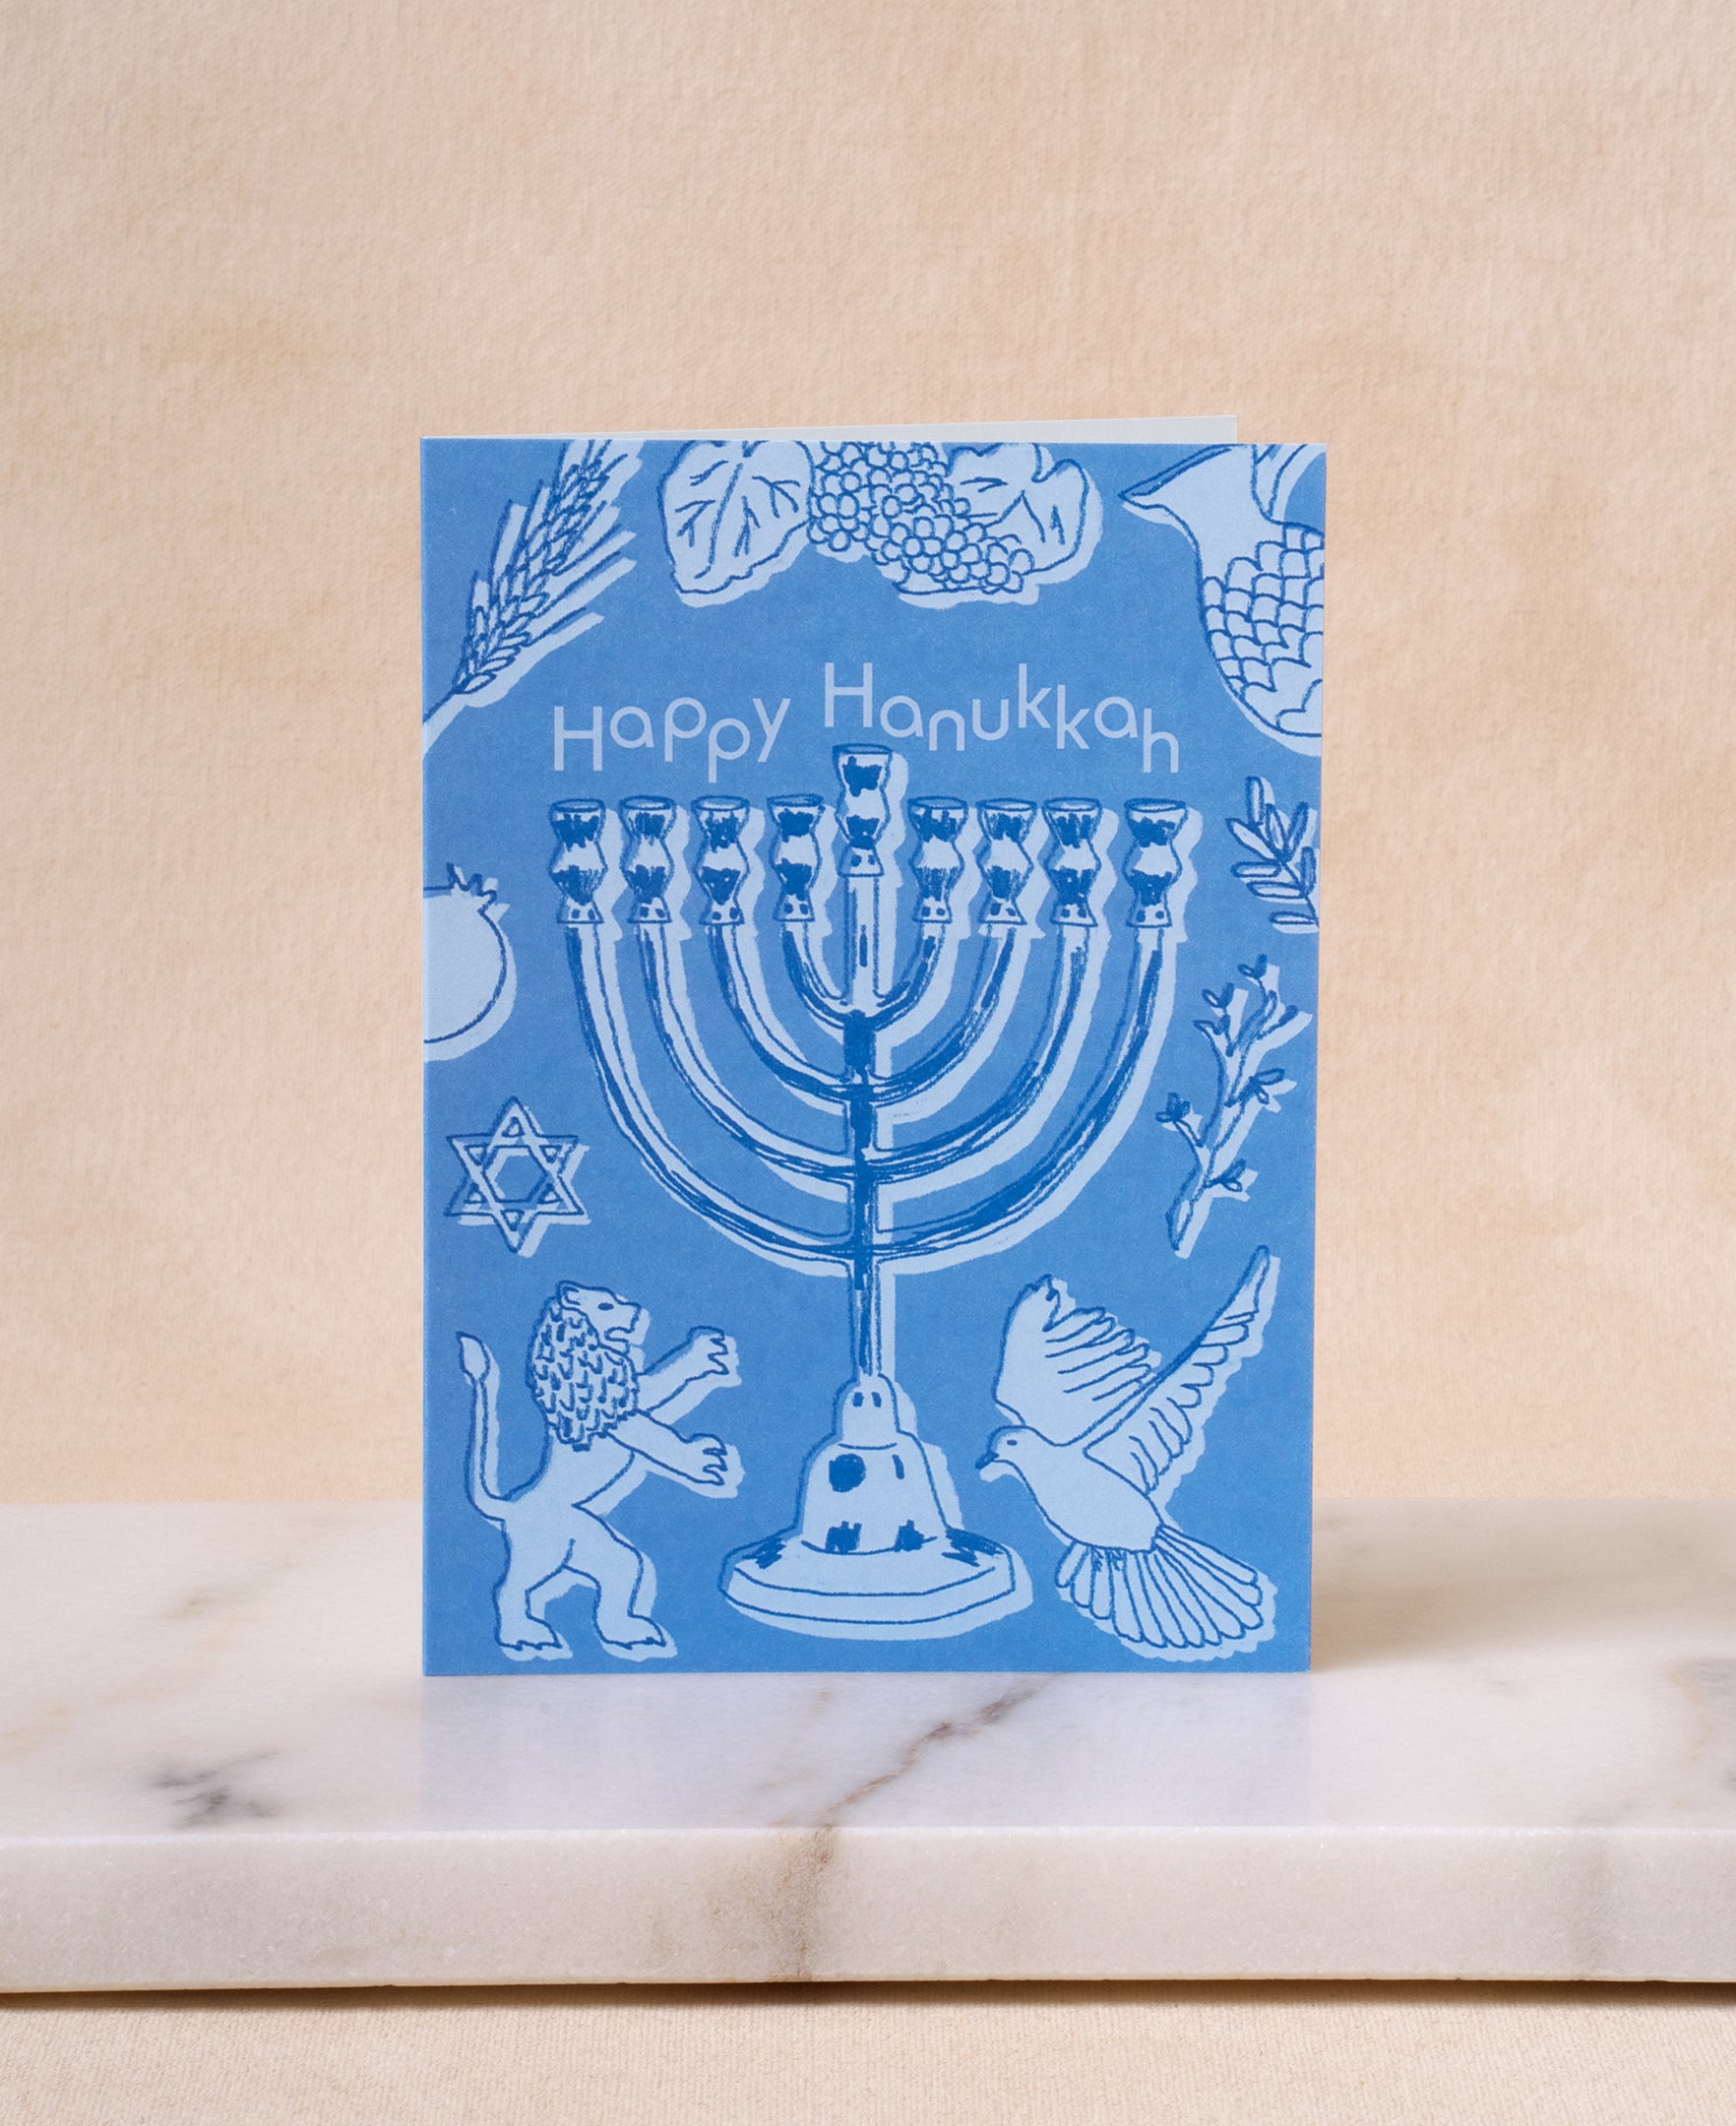 Happy Hanukkah greeting card with menorah design